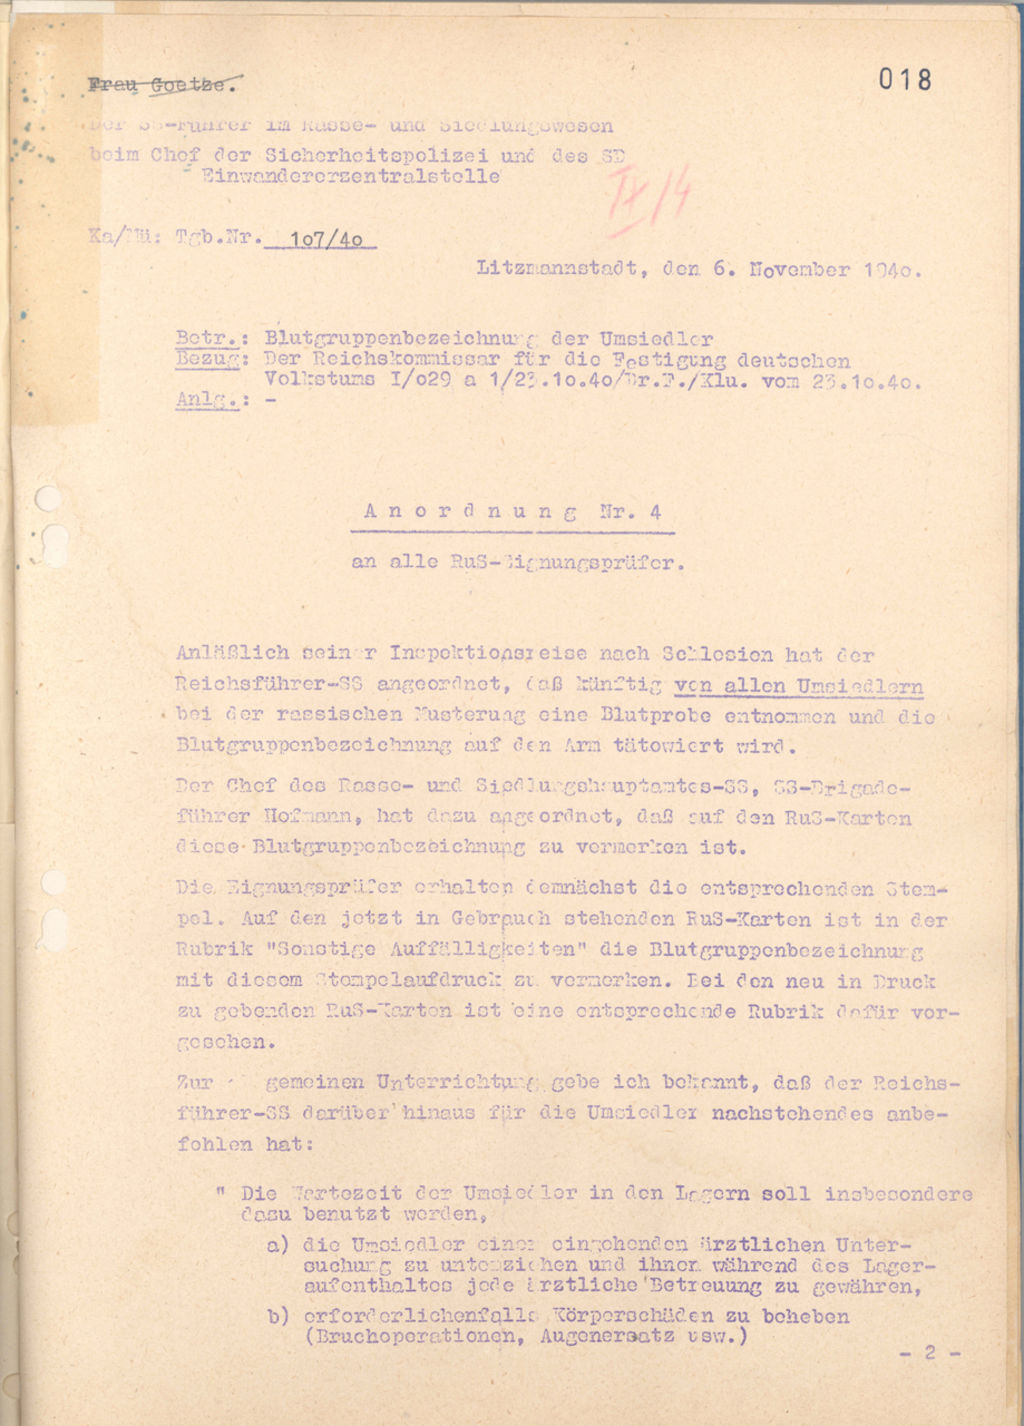 Exponat: Anordnung zur Blutgruppenbezeichnung der Umsiedler, 1940